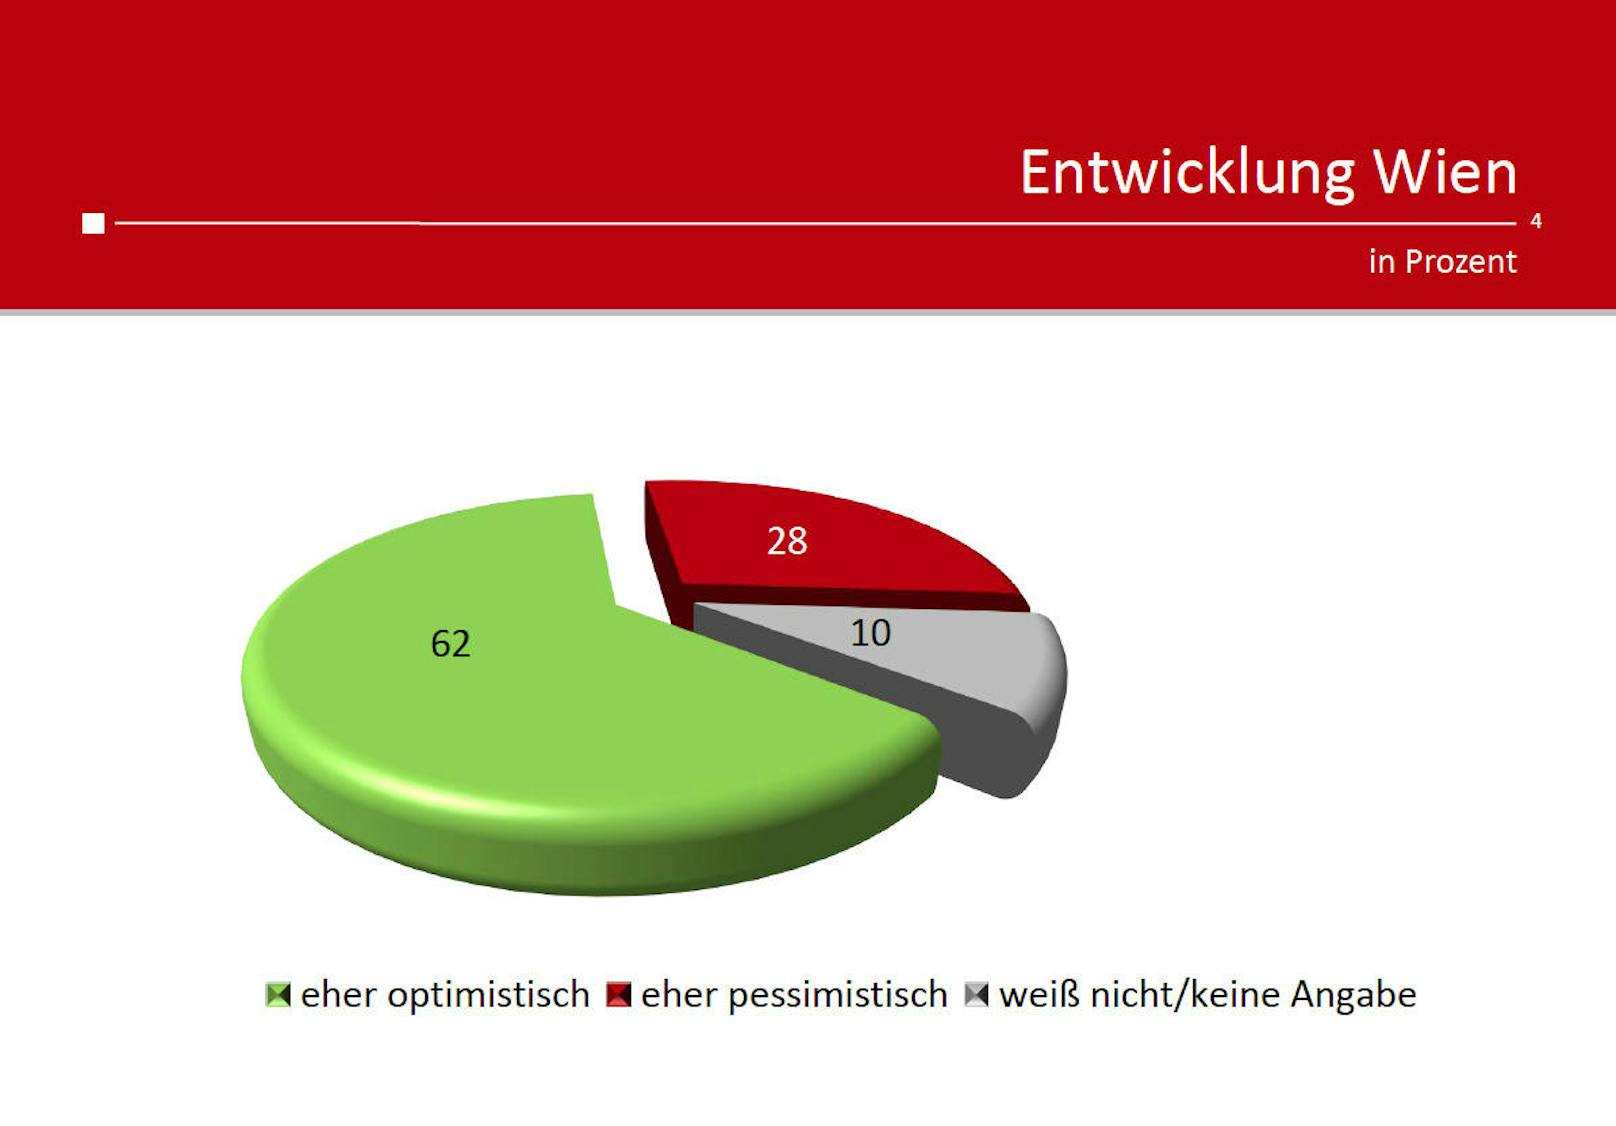 62 Prozent der Wiener gehen optimistisch ins Neue Jahr.